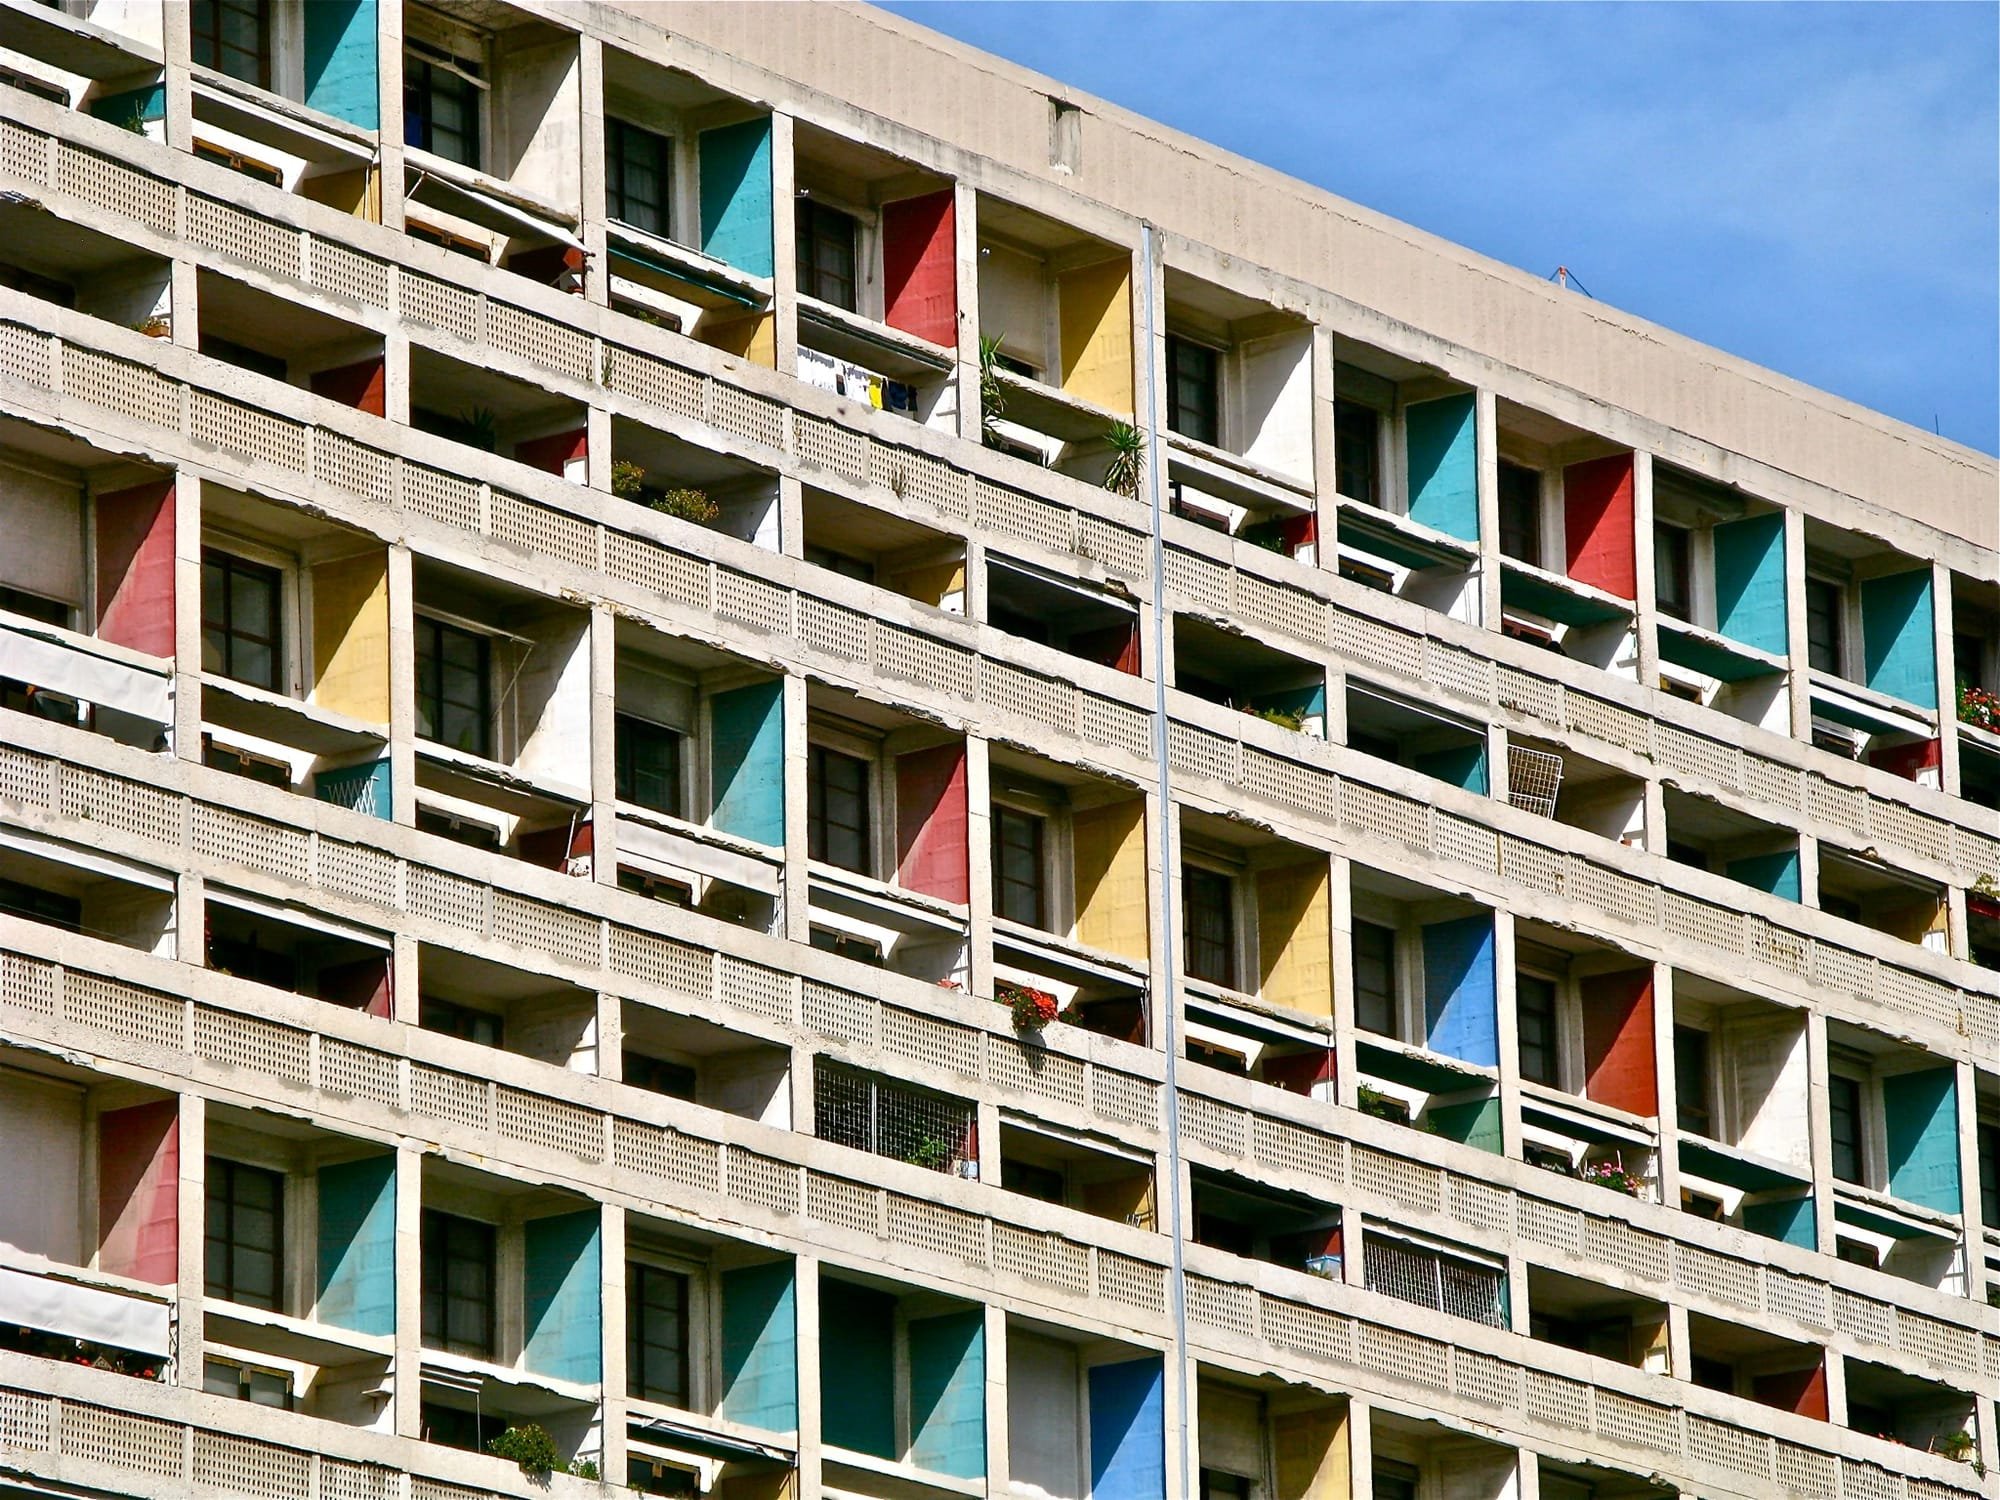 La Cité radieuse Le Corbusier à Marseille (France)